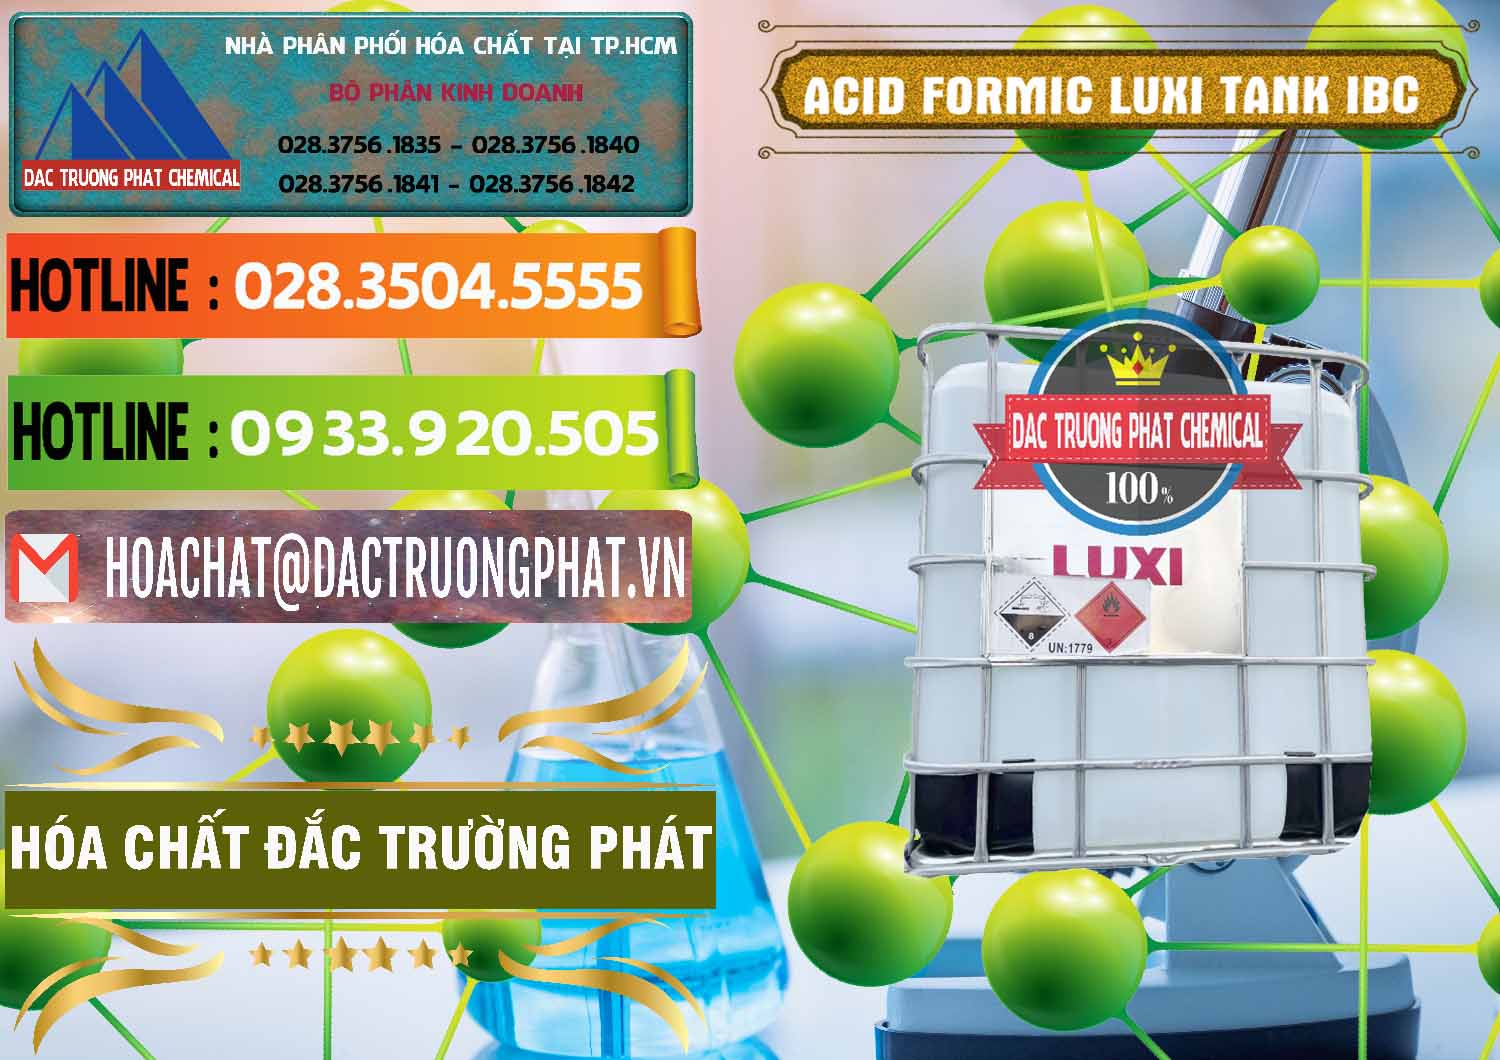 Đơn vị phân phối _ bán Acid Formic - Acid Formic Tank - Bồn IBC Luxi Trung Quốc China - 0400 - Chuyên kinh doanh - phân phối hóa chất tại TP.HCM - cungcaphoachat.com.vn